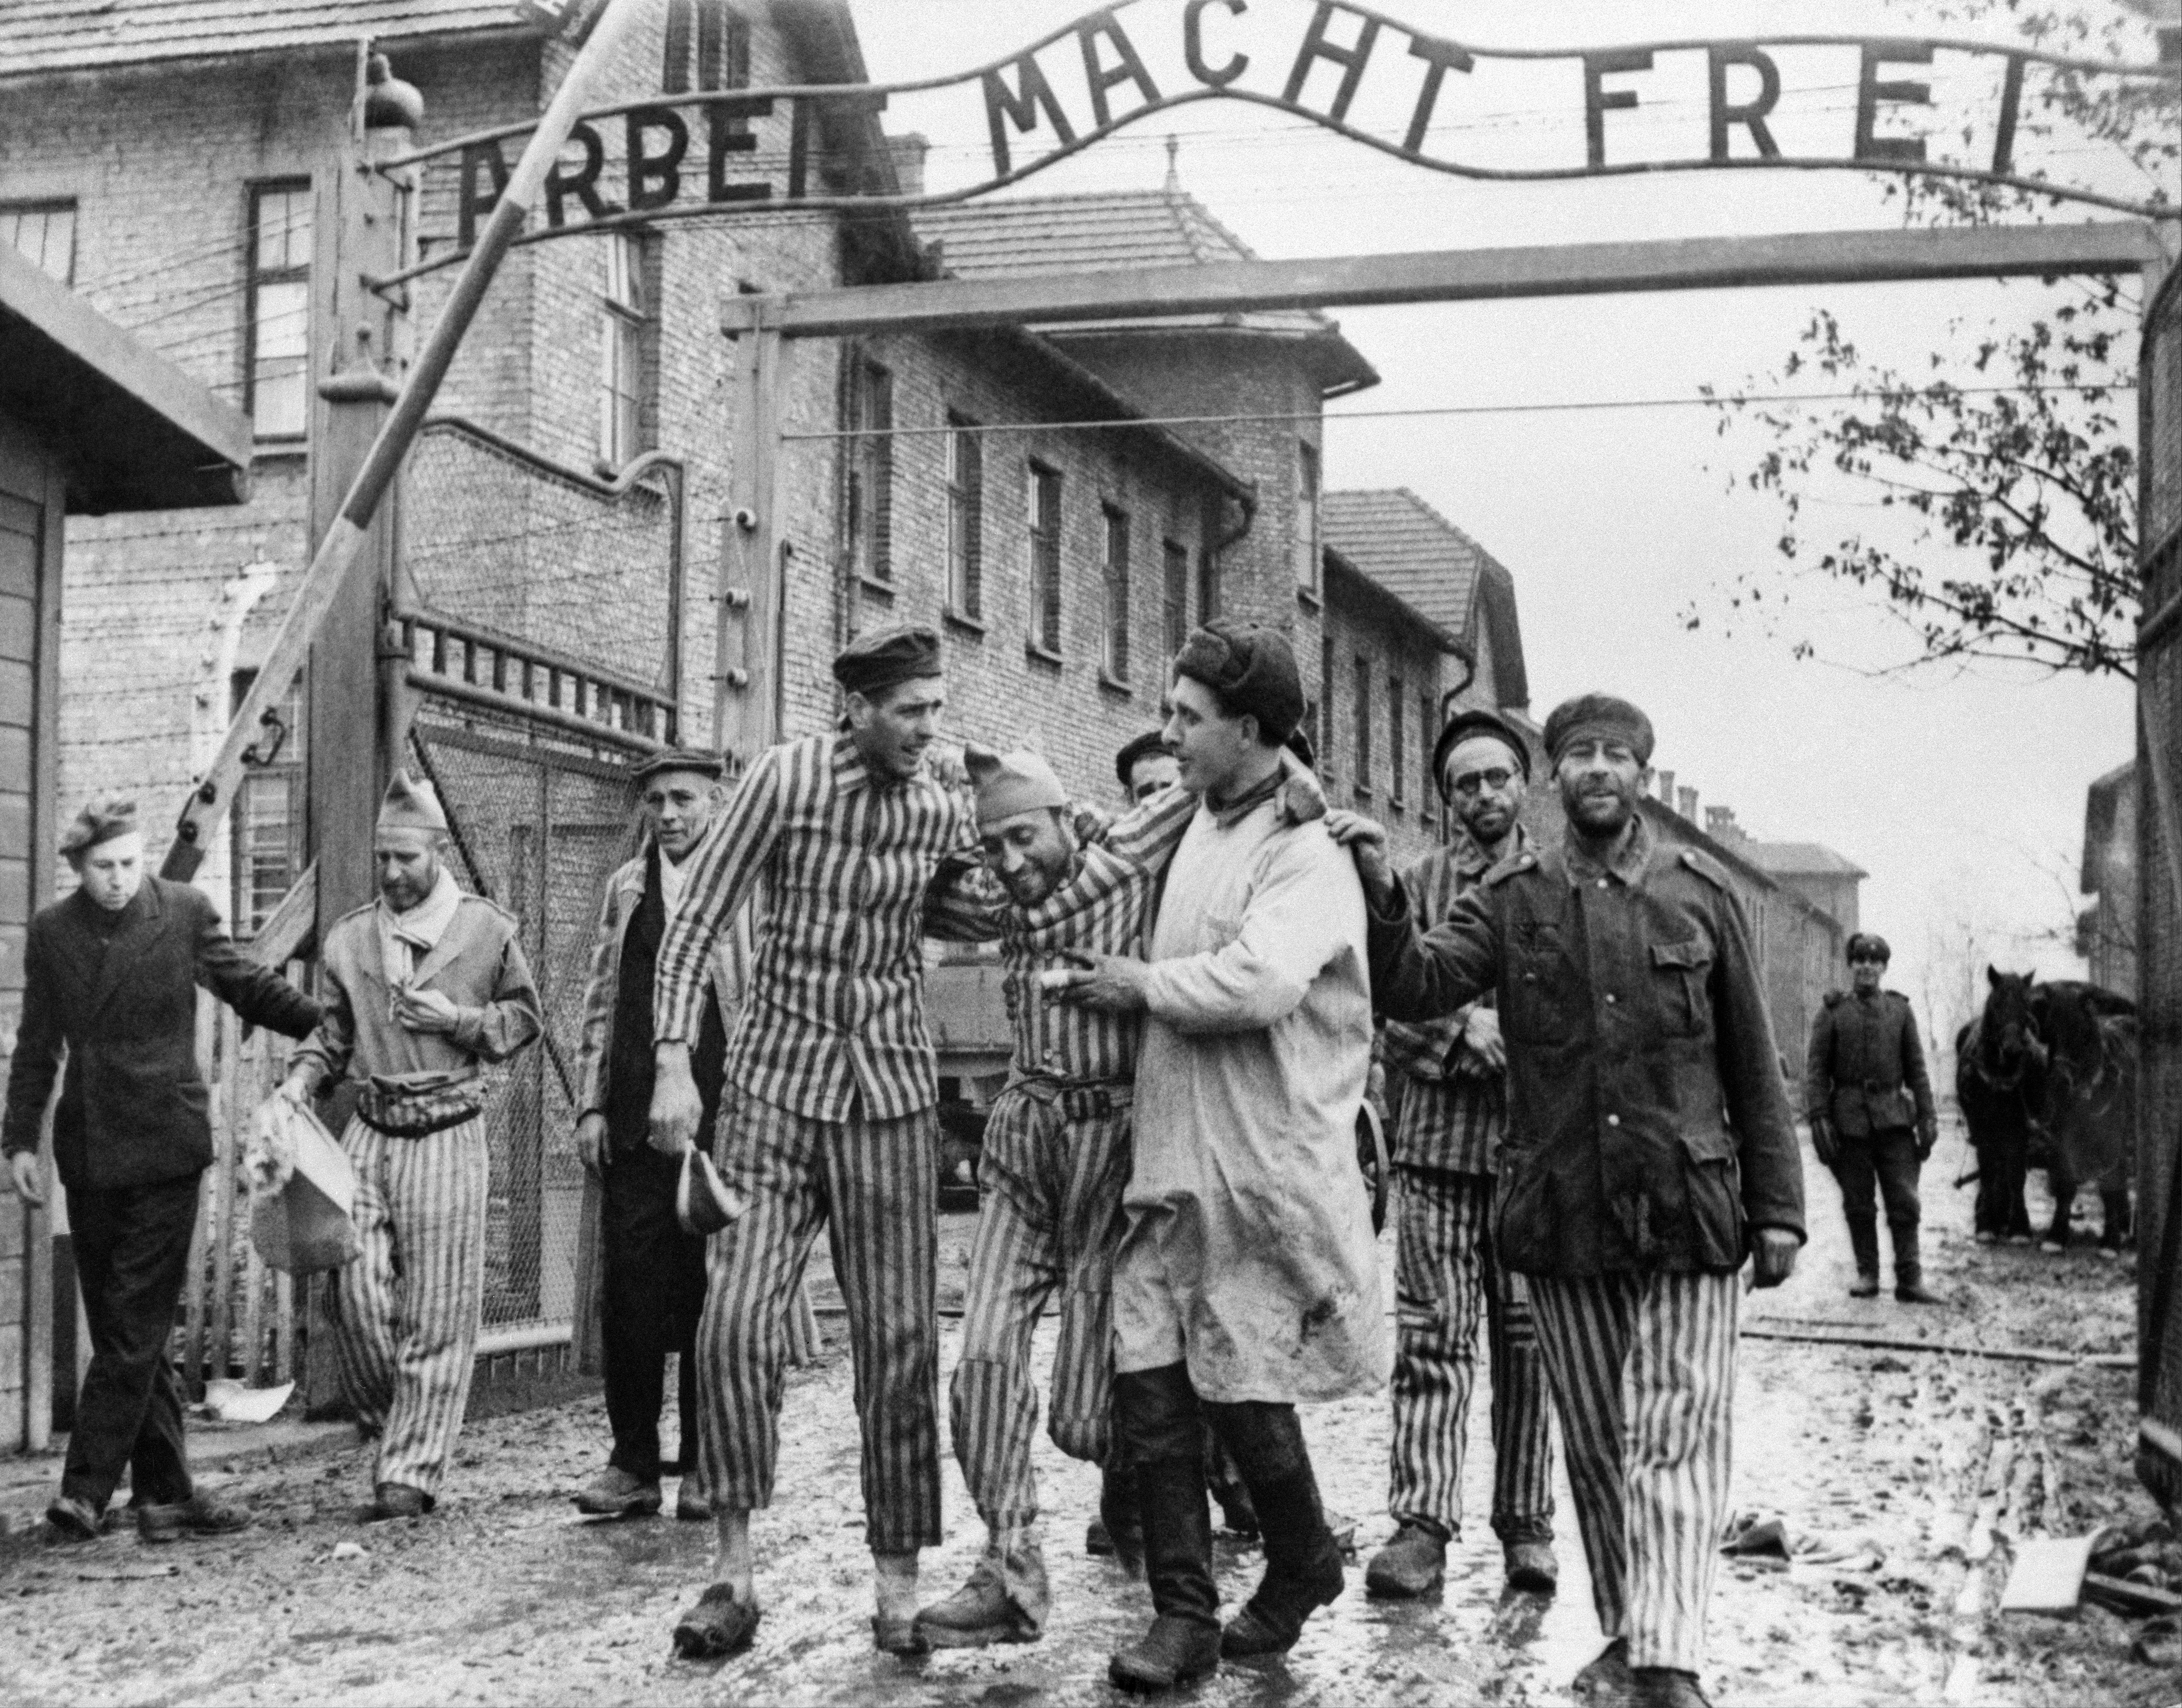 Вторая мировая война 1939-1945 годов. Освобождение советскими войсками узников немецко-фашистского концлагеря "Аушвиц-Биркенау" - Освенцим (Польша).